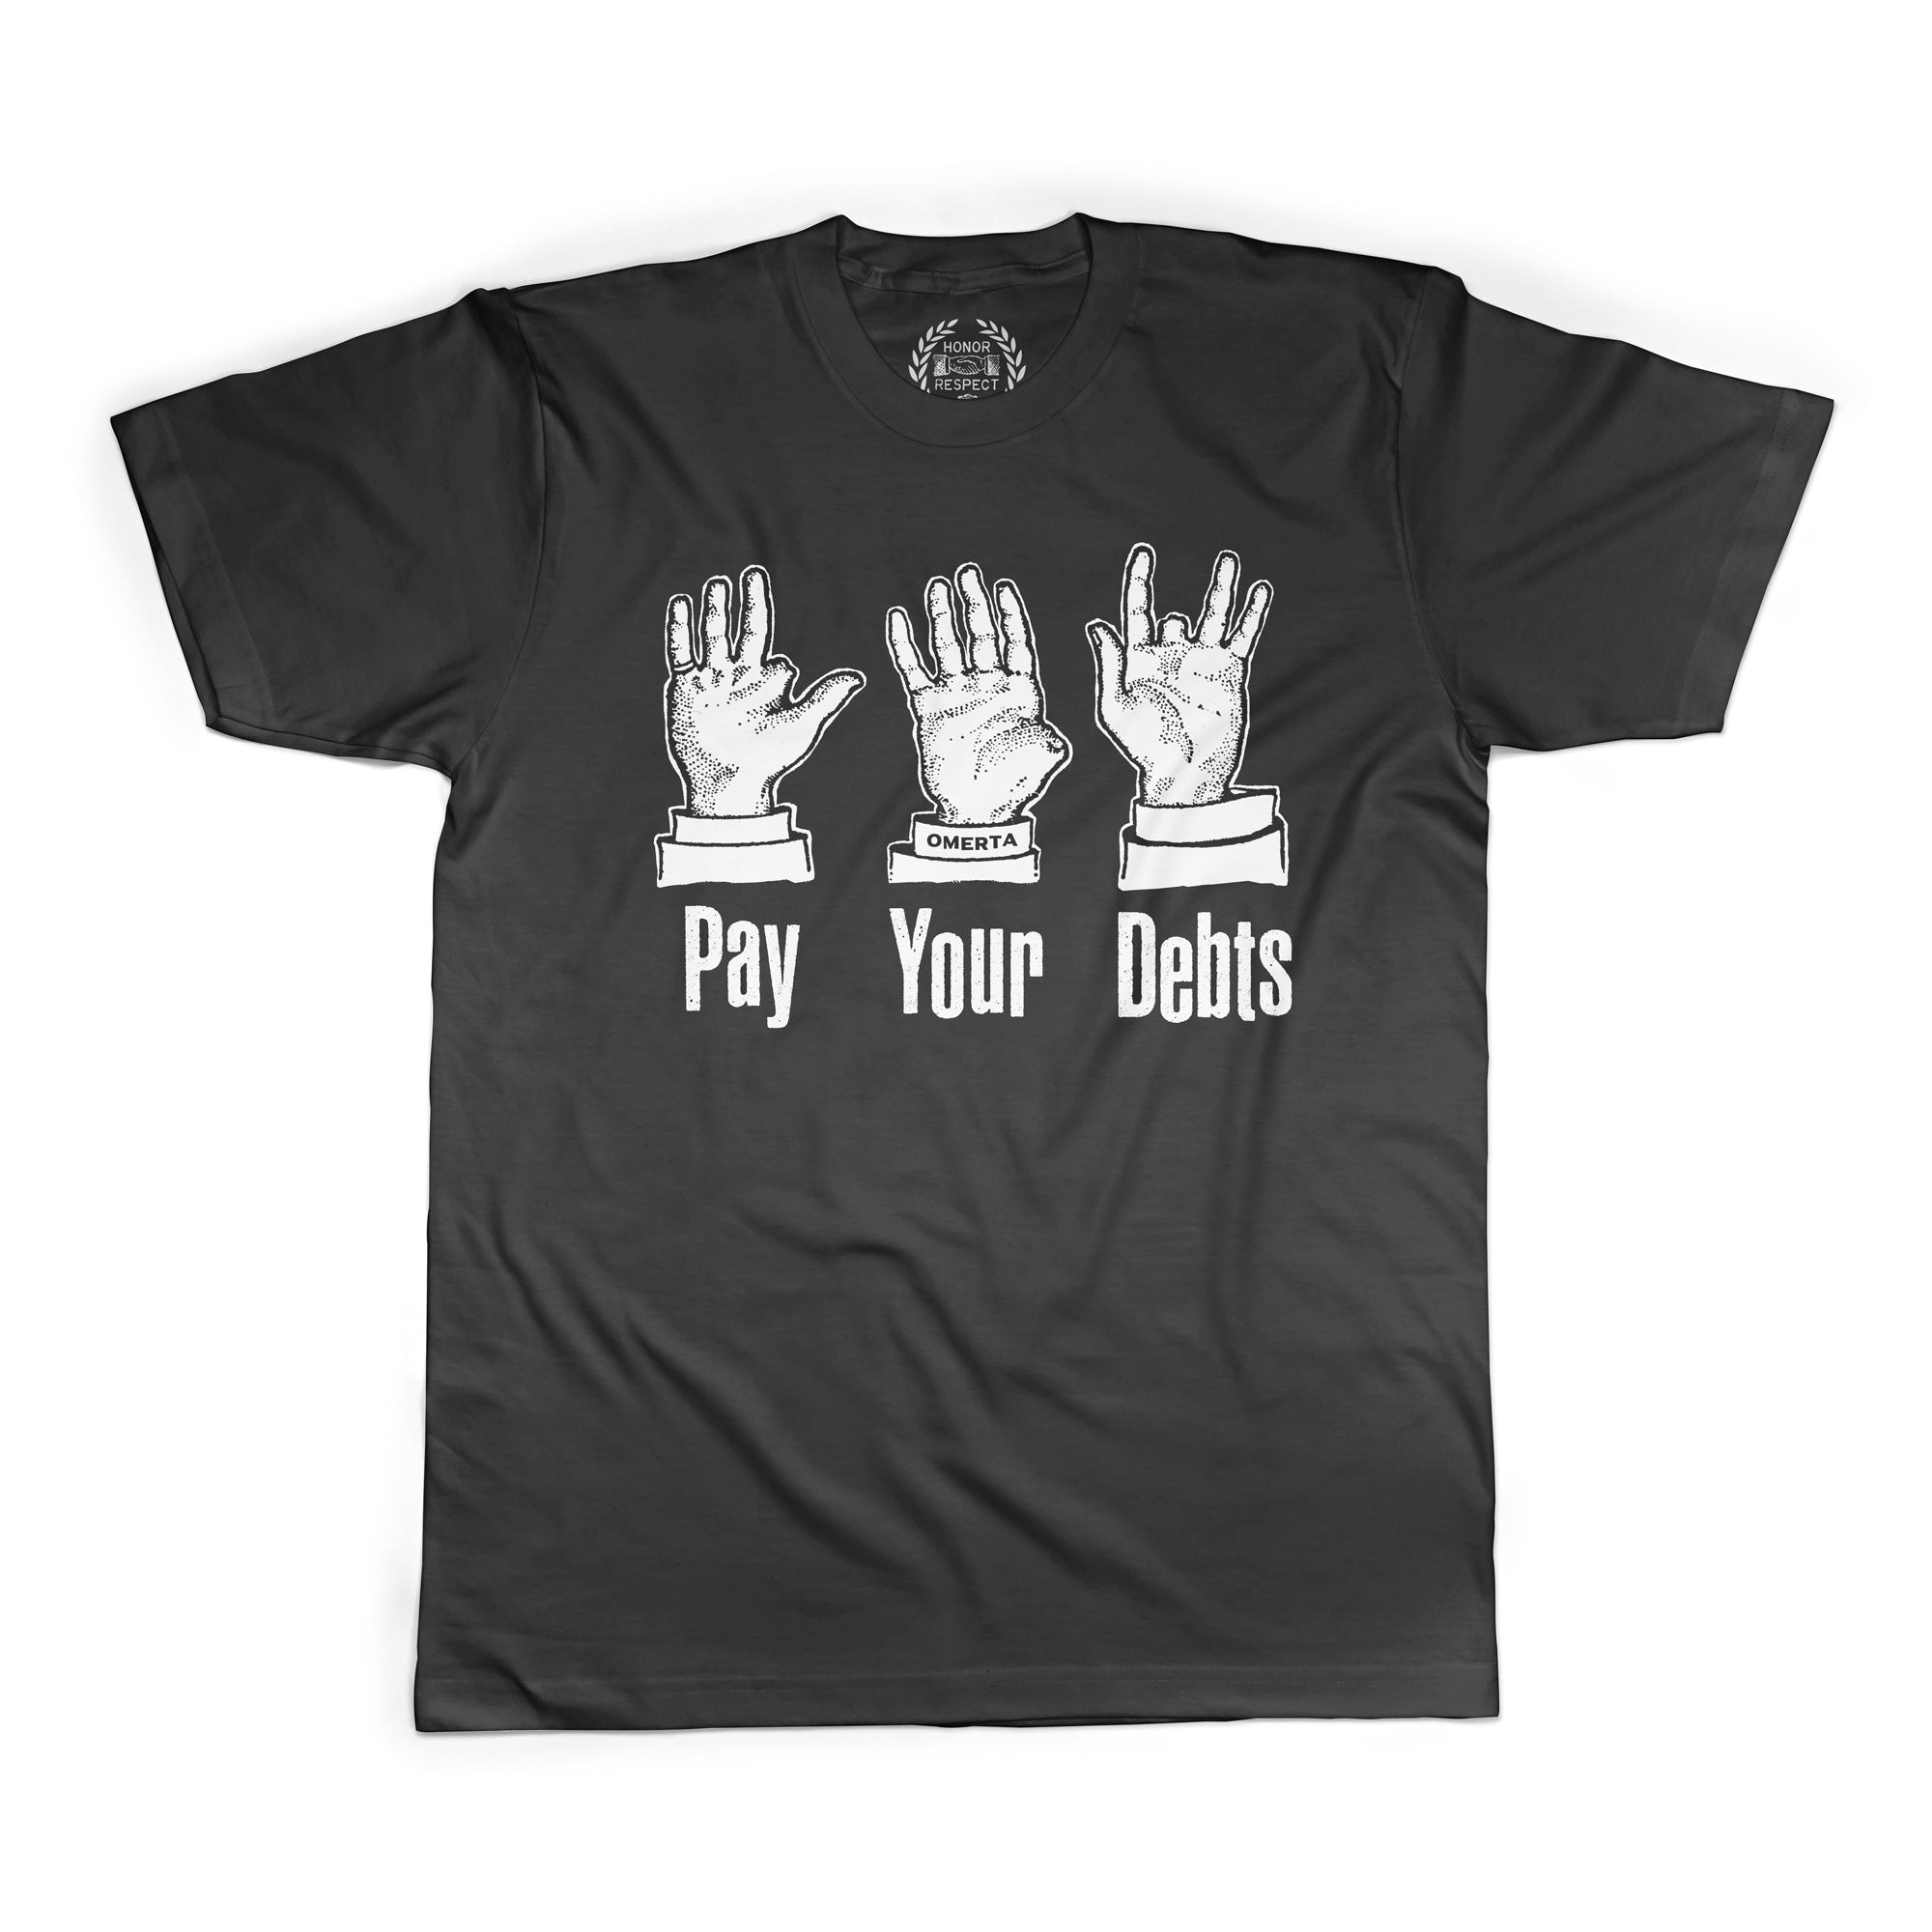 Pay Your Debts Shirt